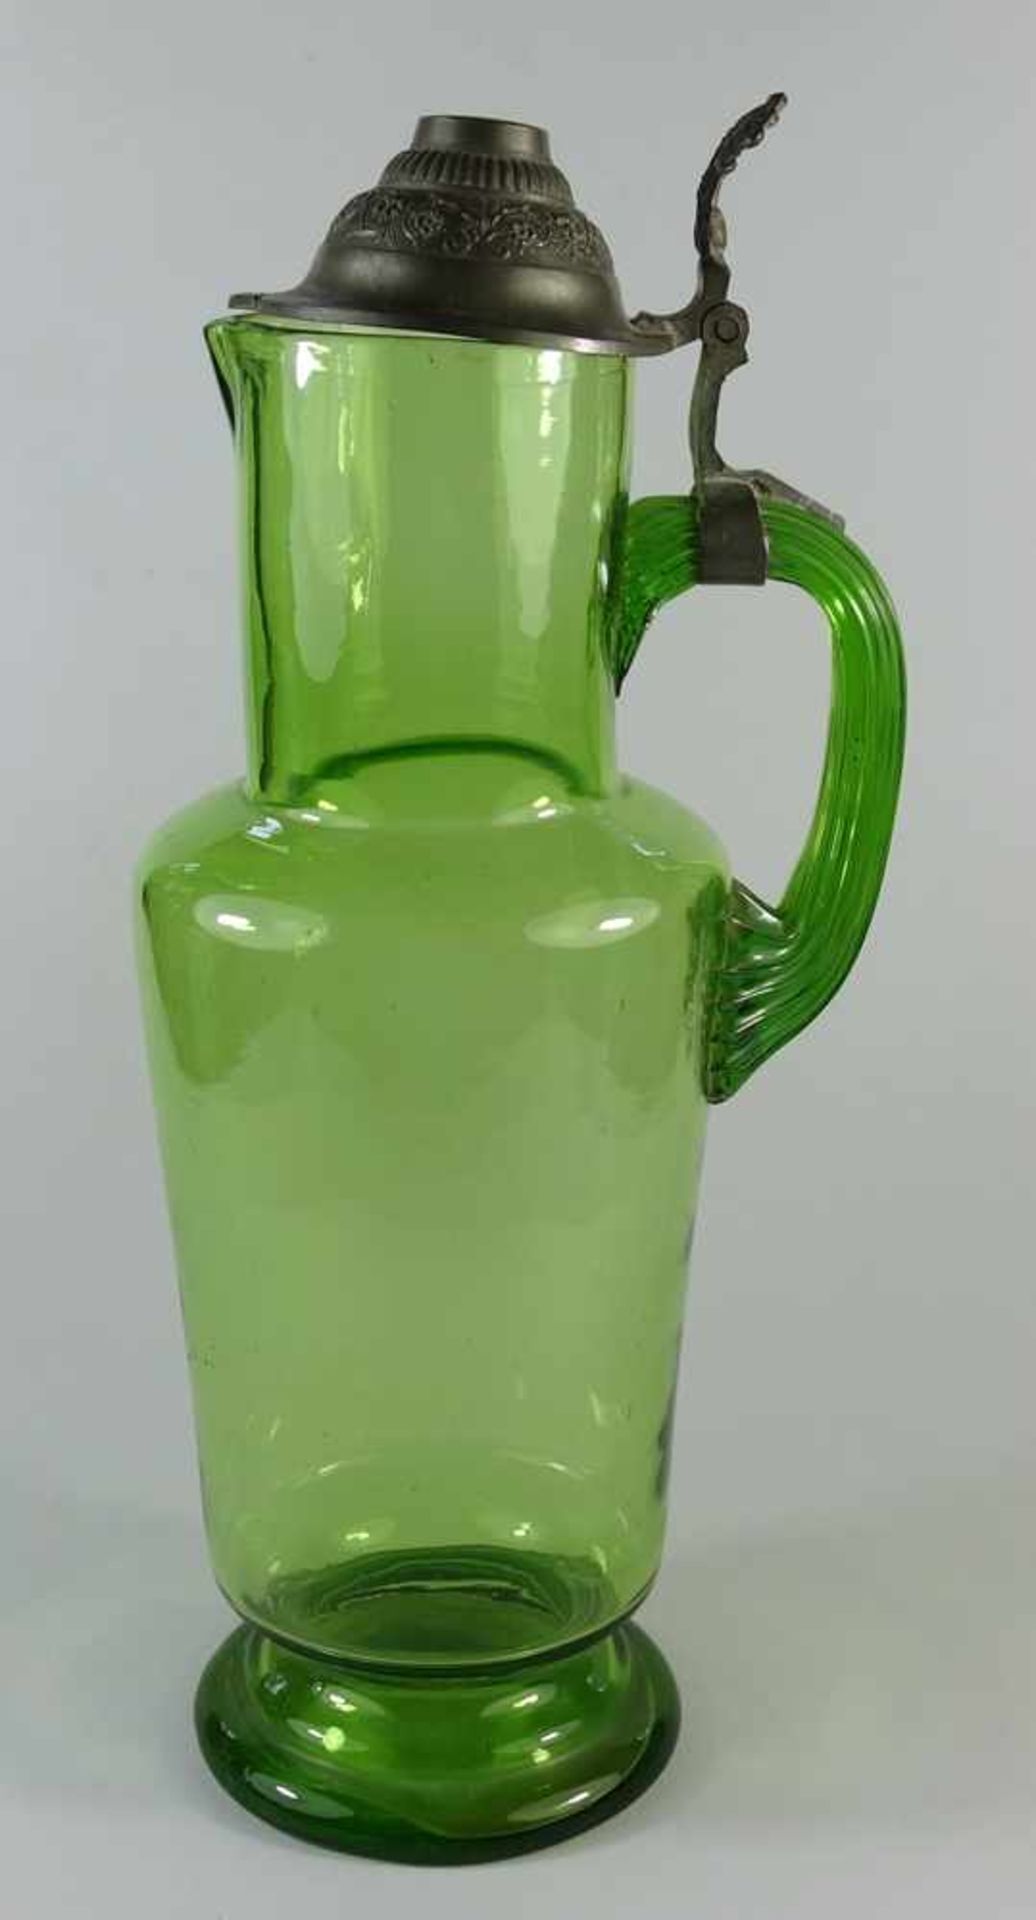 Historismus- Schenkkanne, um 1900, Grünglas, eingezogene Schulter, zylindrischer Hals mti